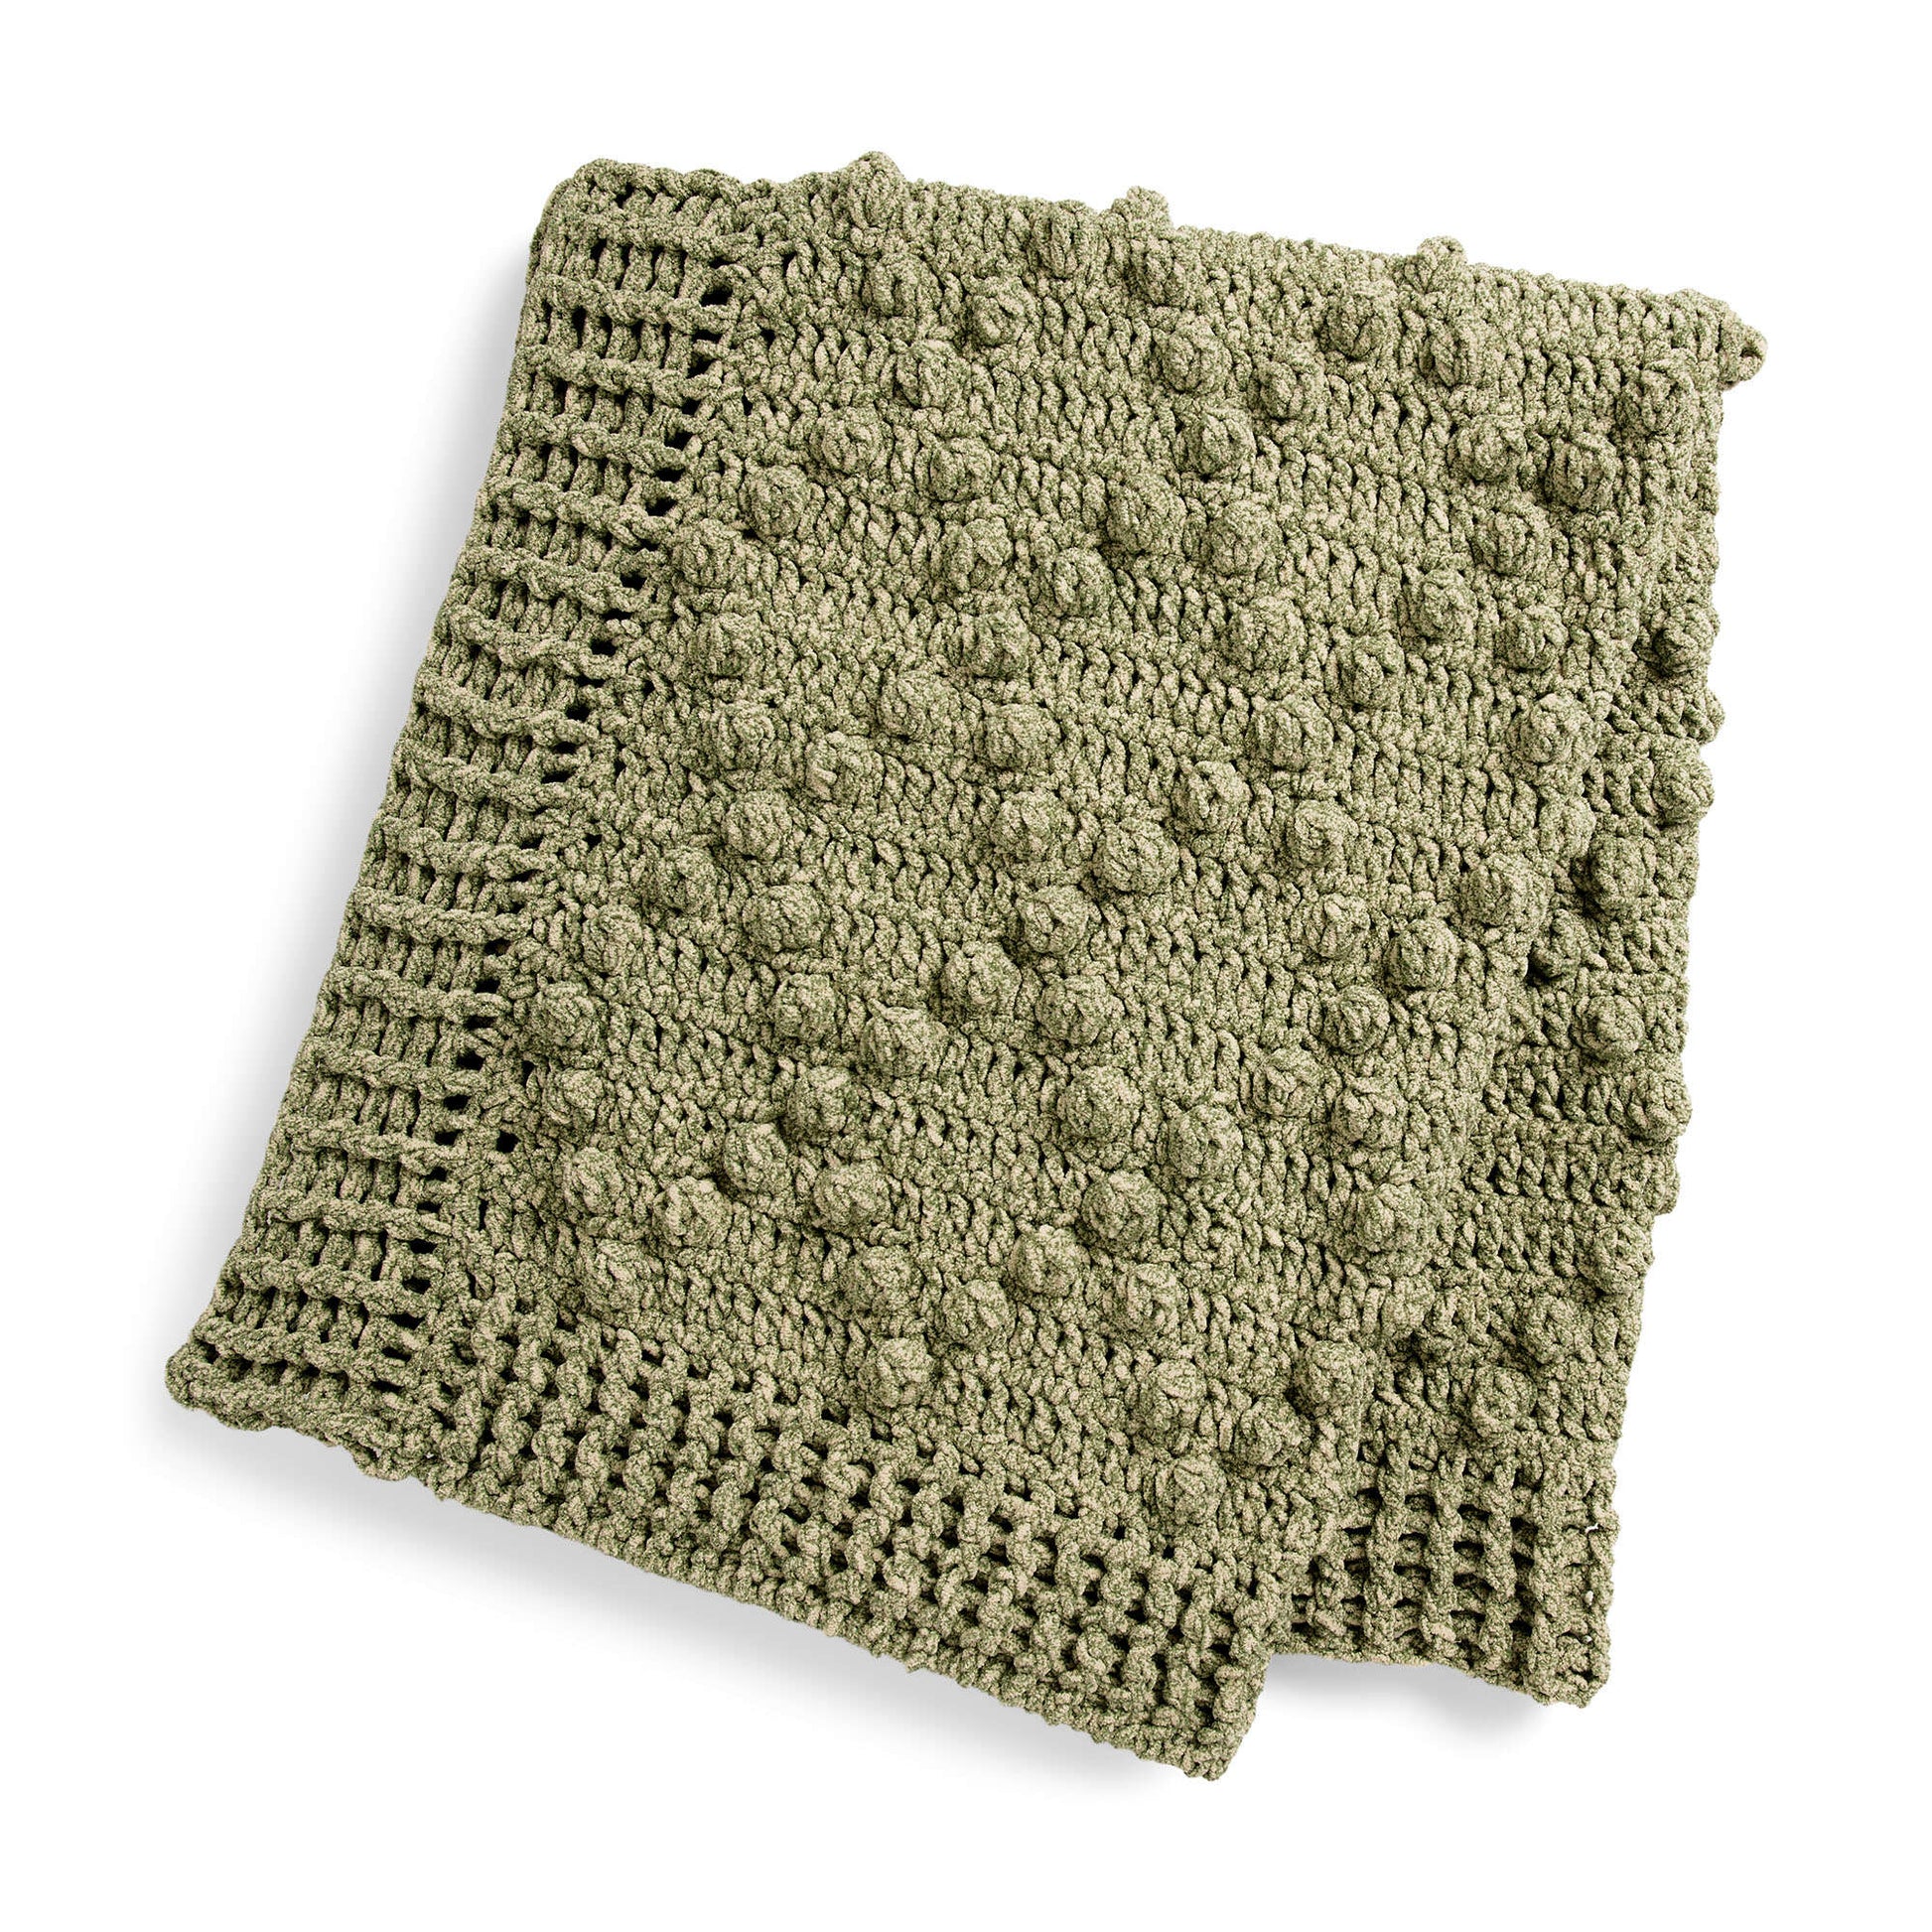 Free Bernat Blanket Speckle Crochet Diamond Popcorn Blanket Pattern